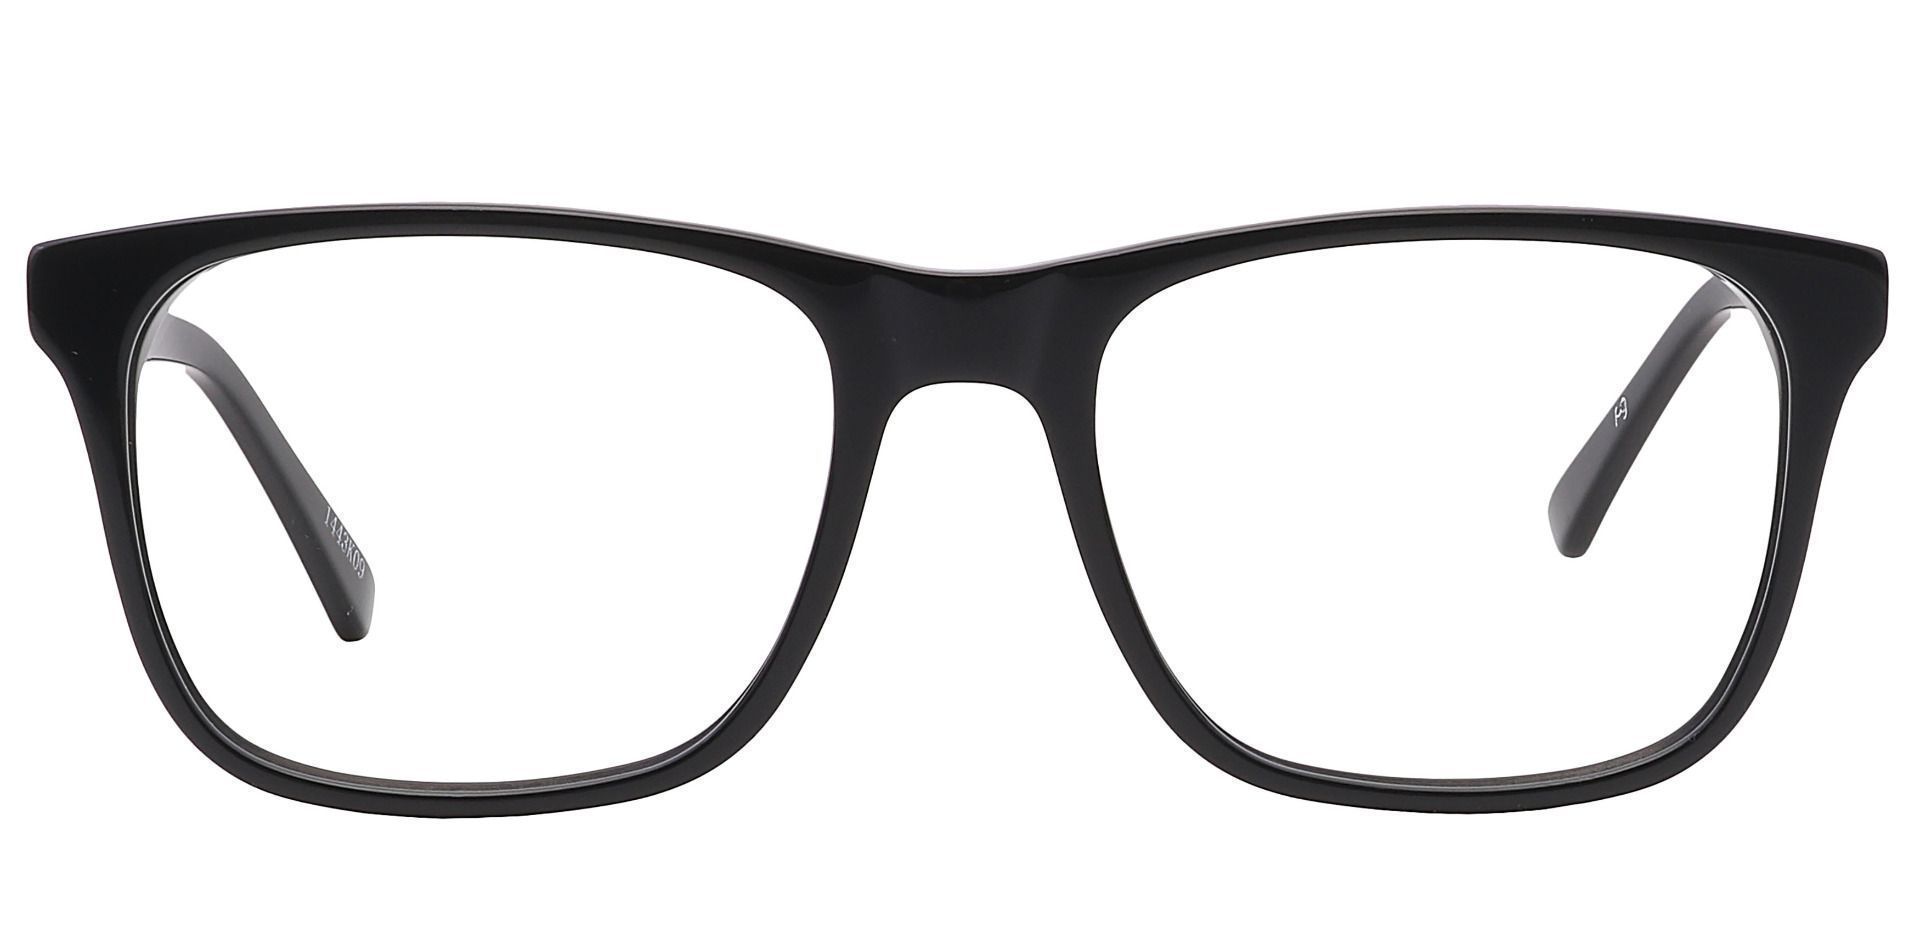 Cantina Square Prescription Glasses - Black